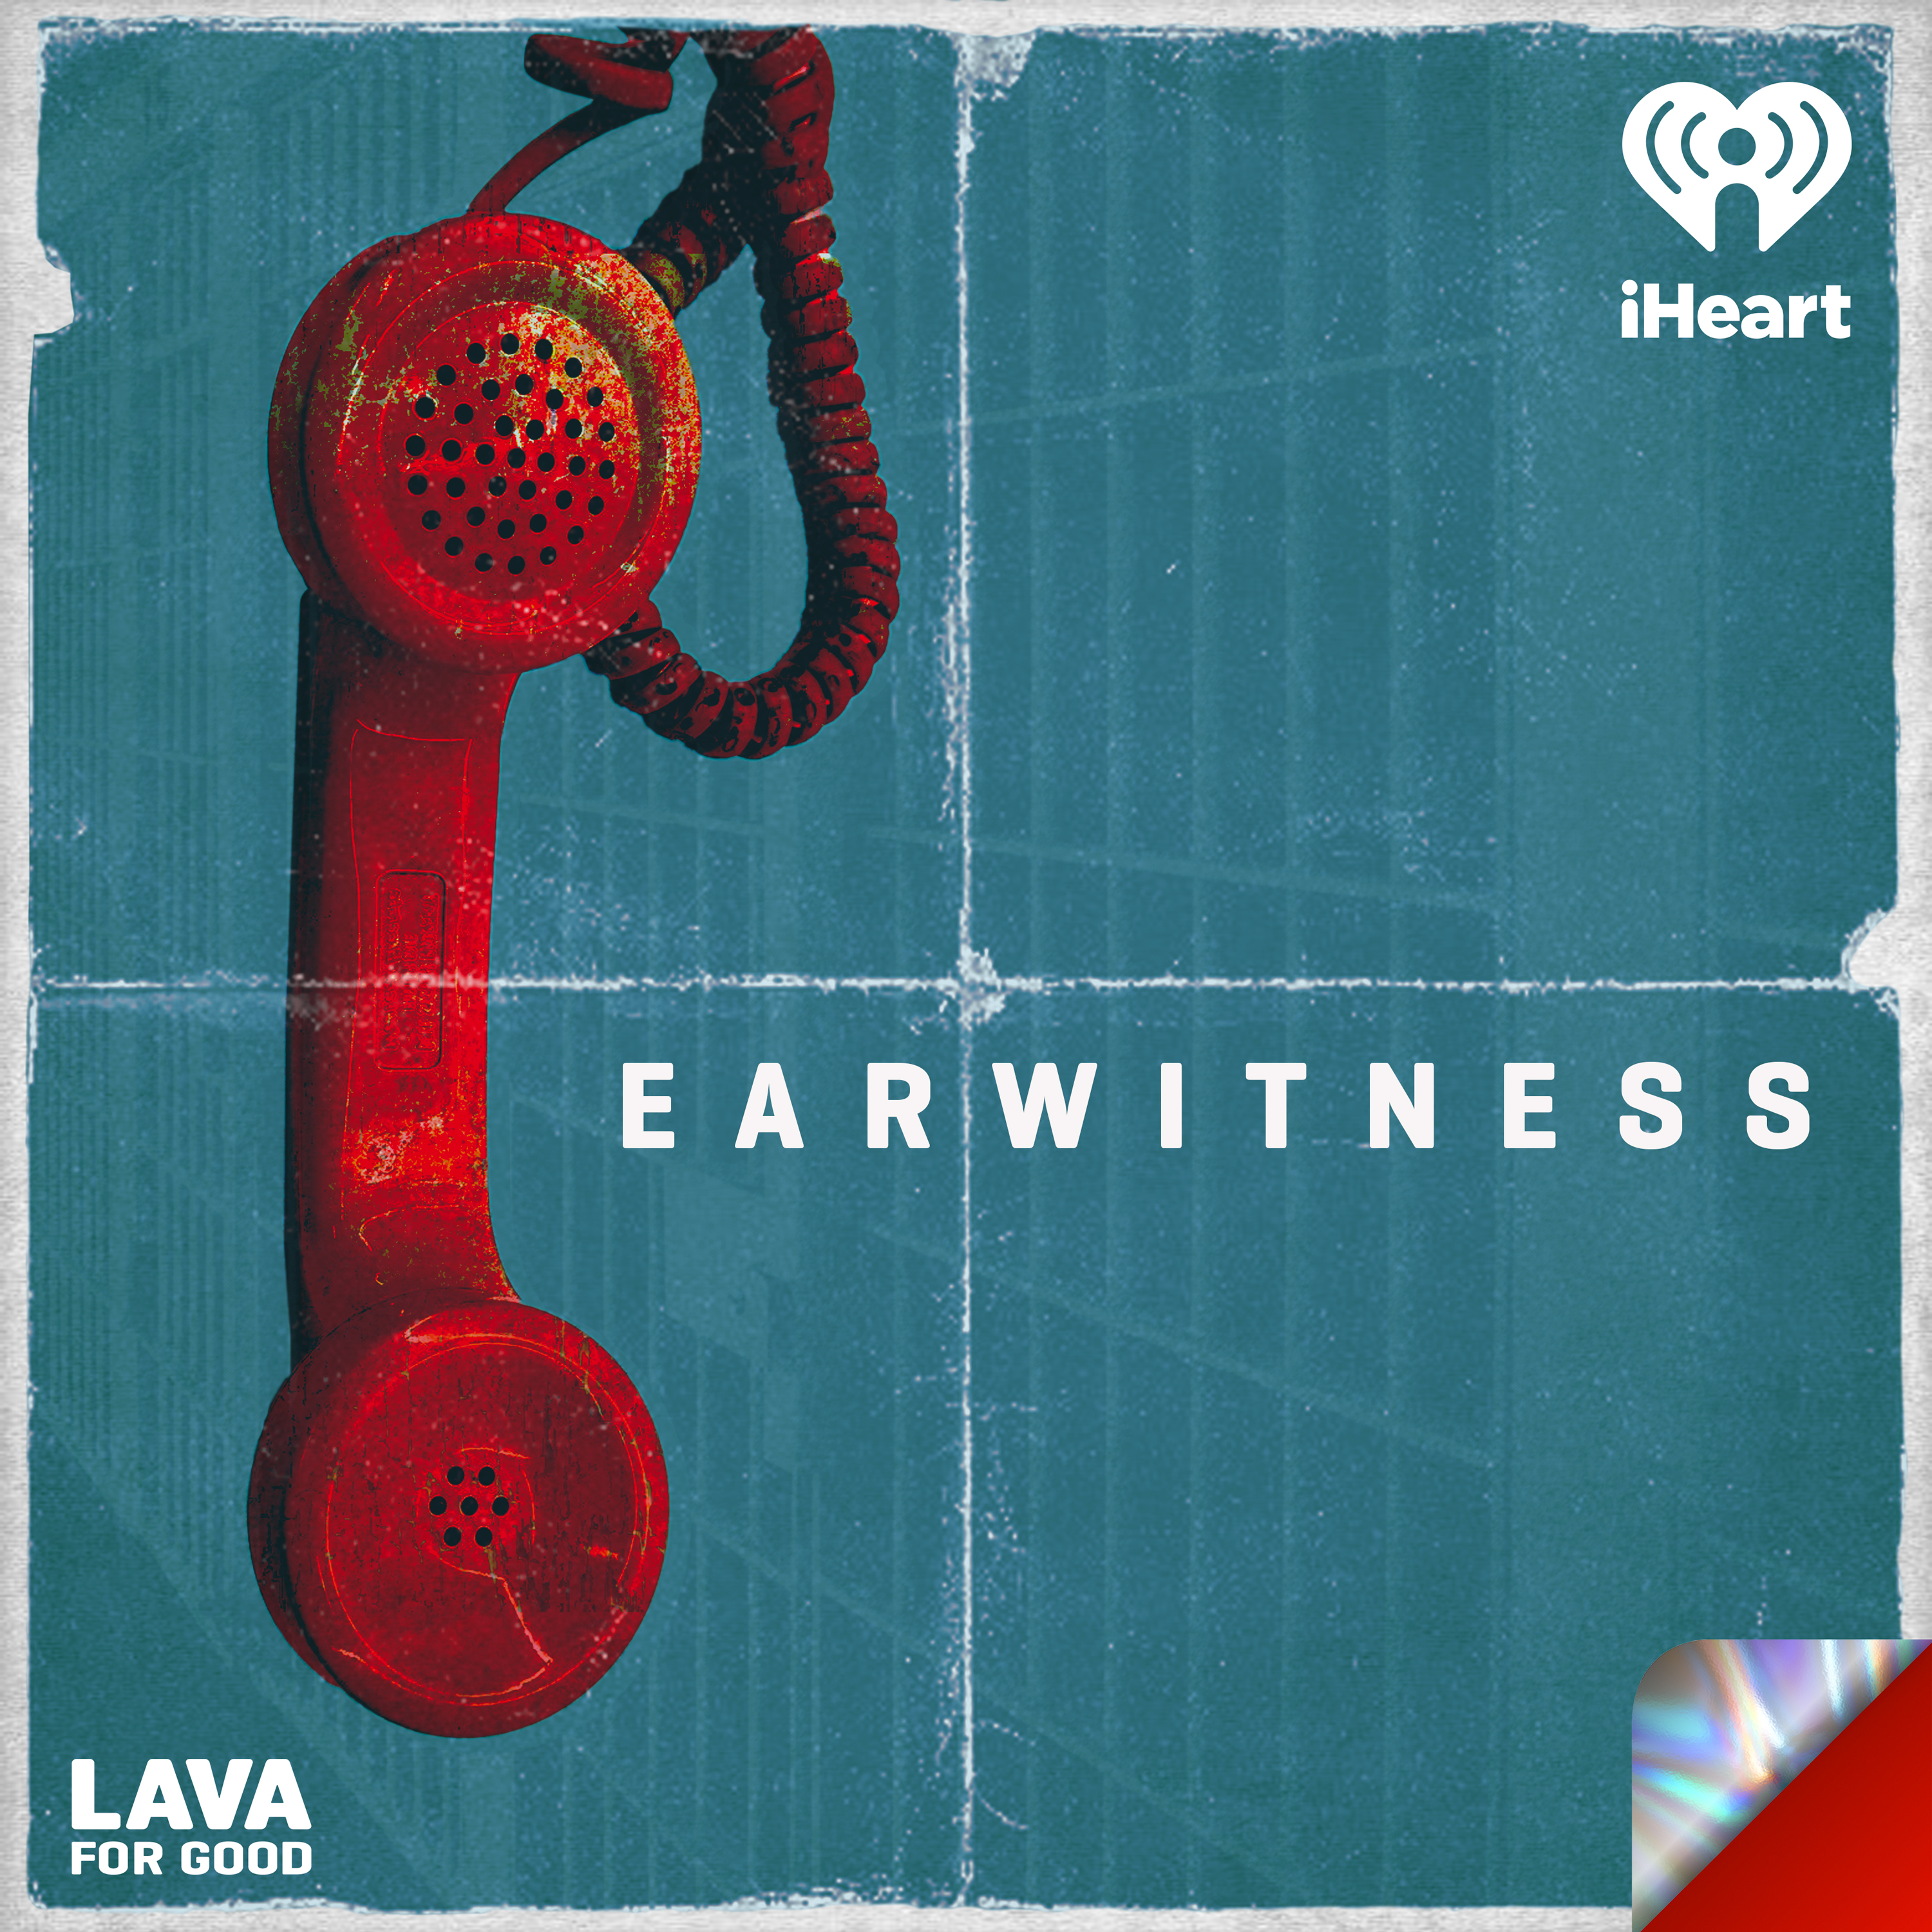 Introducing: Earwitness